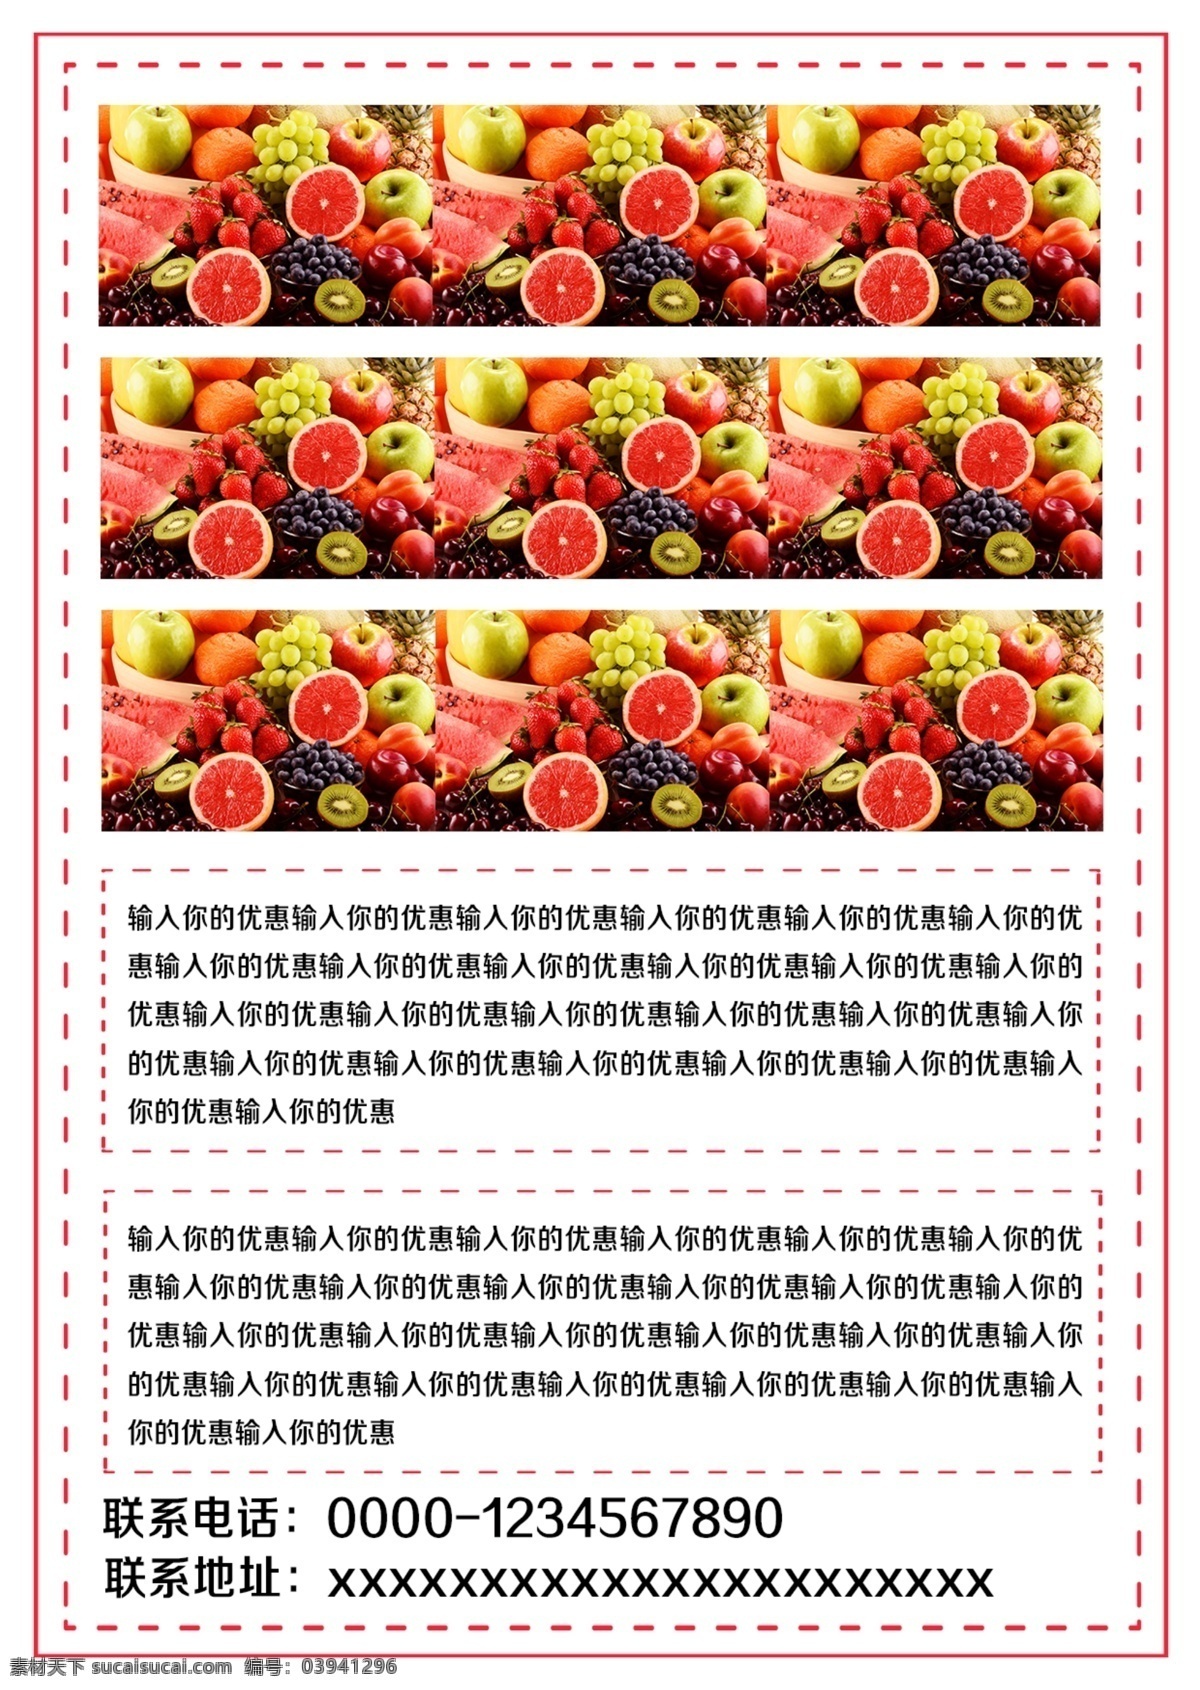 白色 简约 清新 水果 超市 促销 宣传单 模板 宣传 草莓 免费